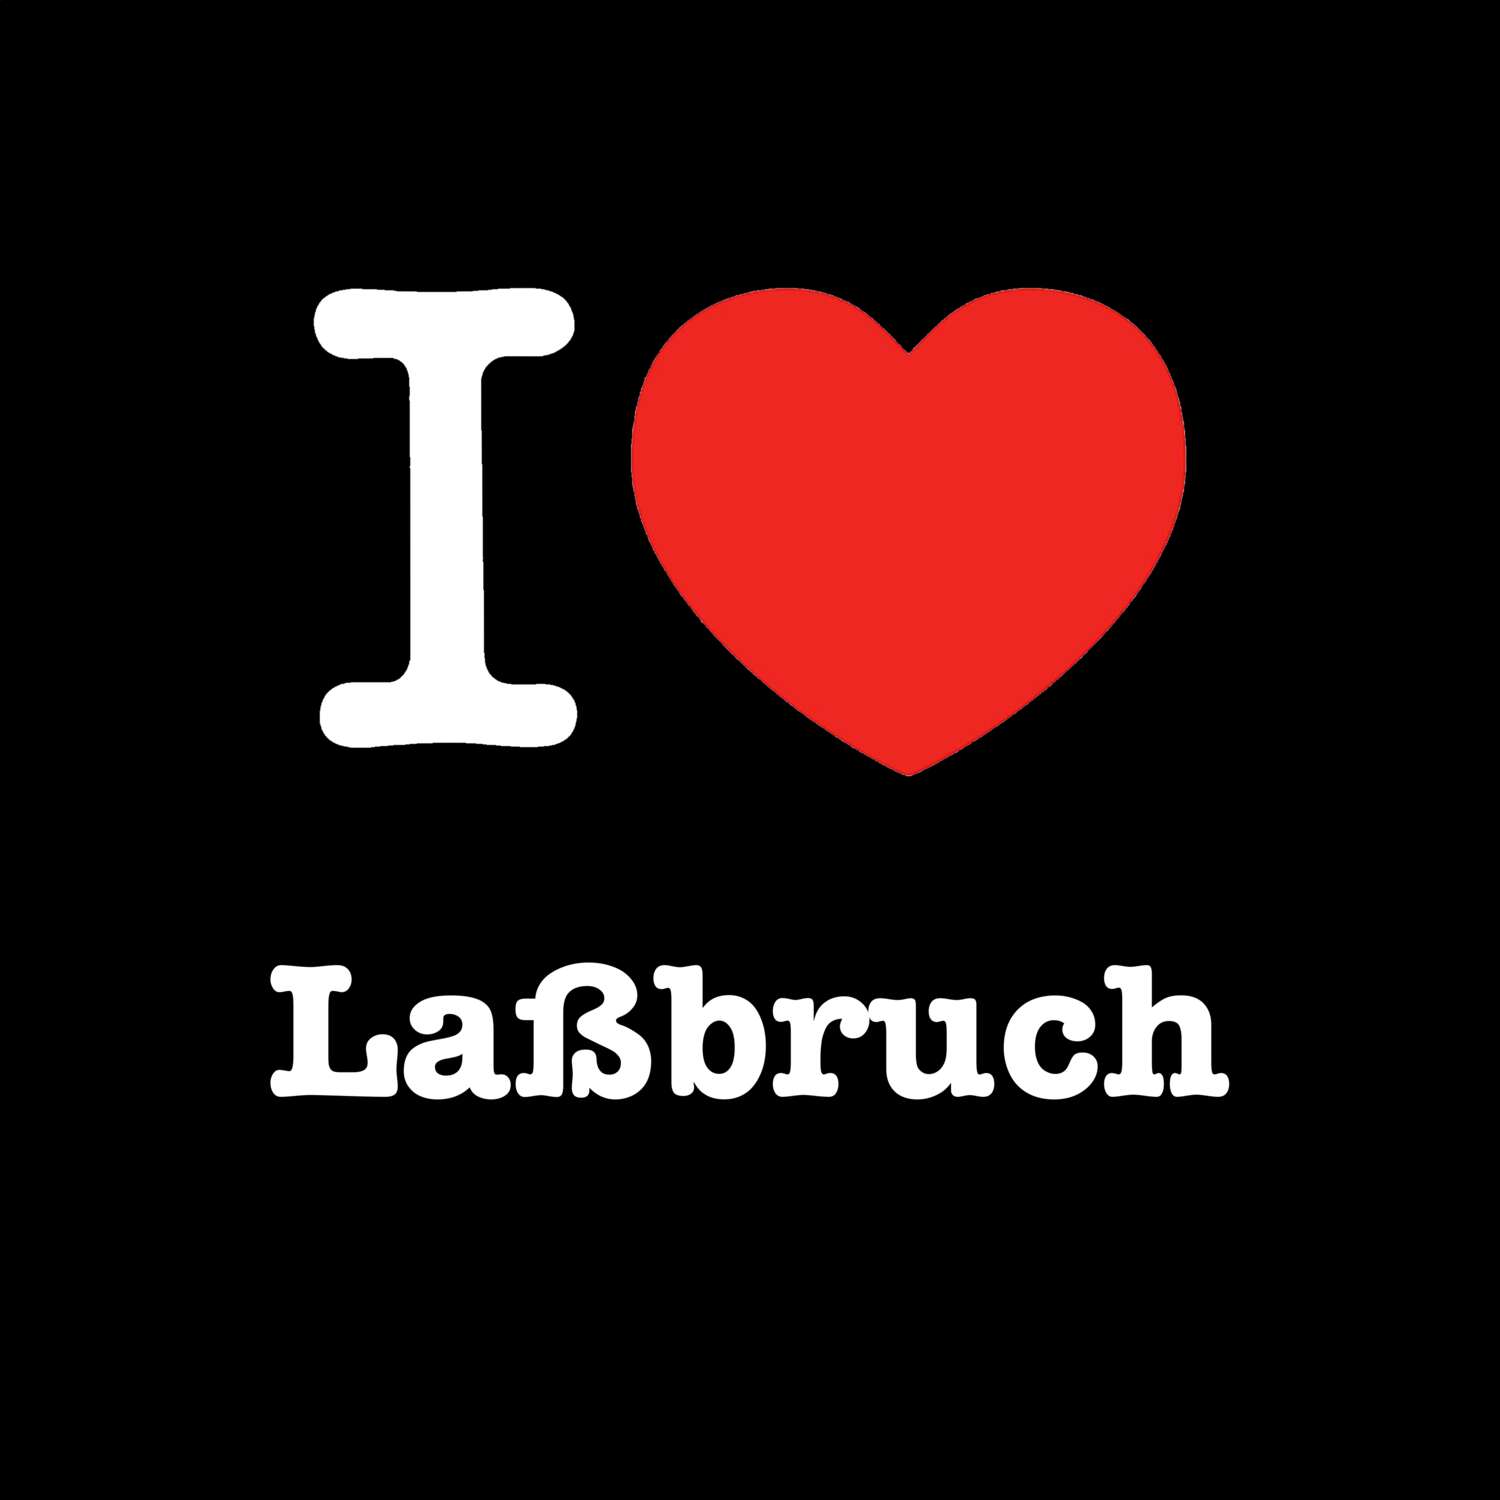 Laßbruch T-Shirt »I love«